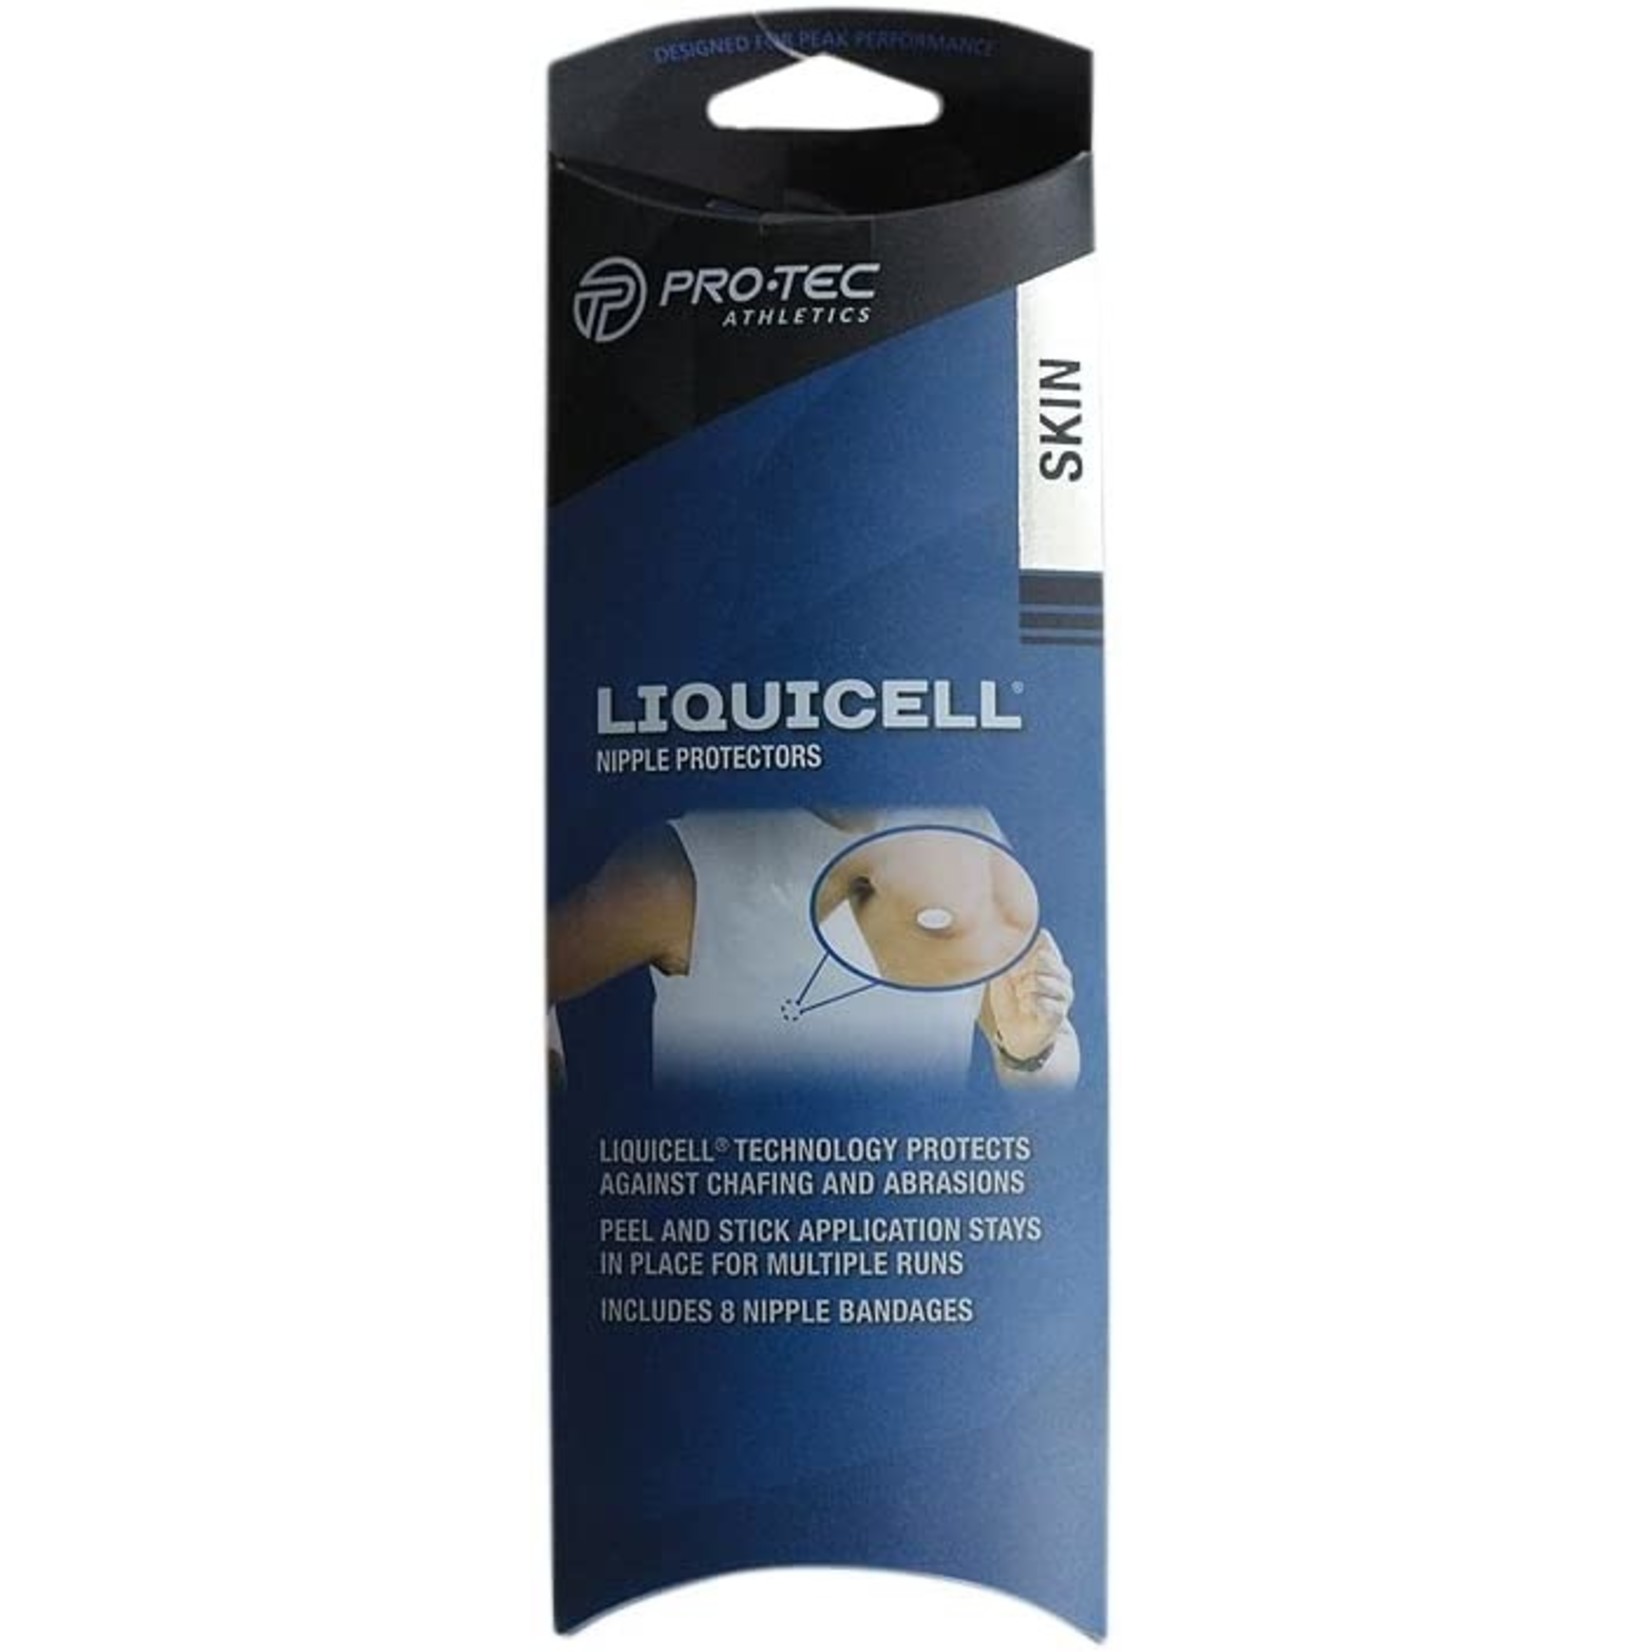 Pro-Tec Liquicell Nipple Protectors